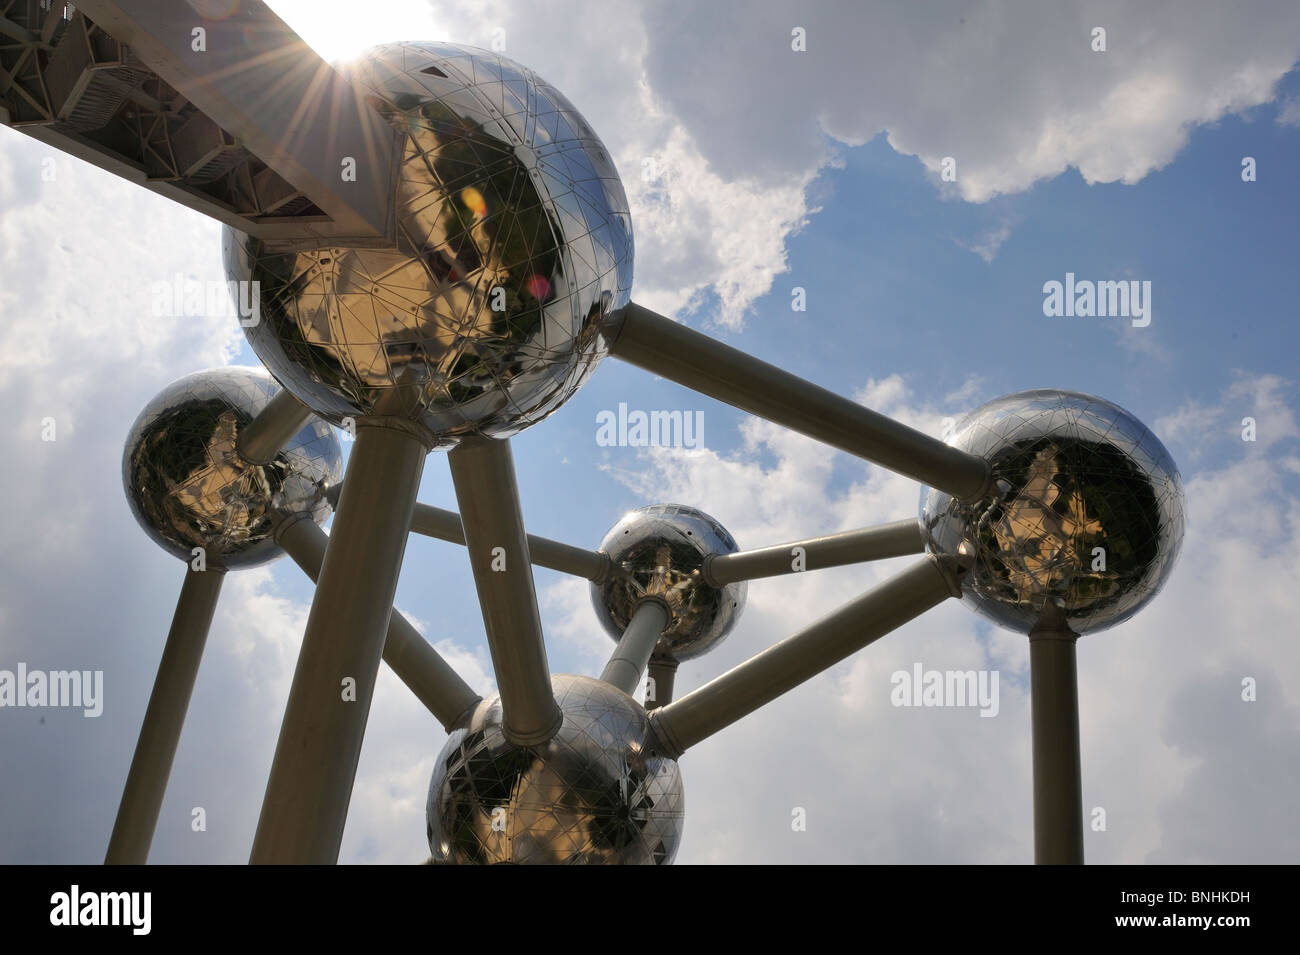 Atomium Bruxelles Belgique attraction touristique symbole iconique boules d'argent. Ciel dramatique nuages sun flare Banque D'Images